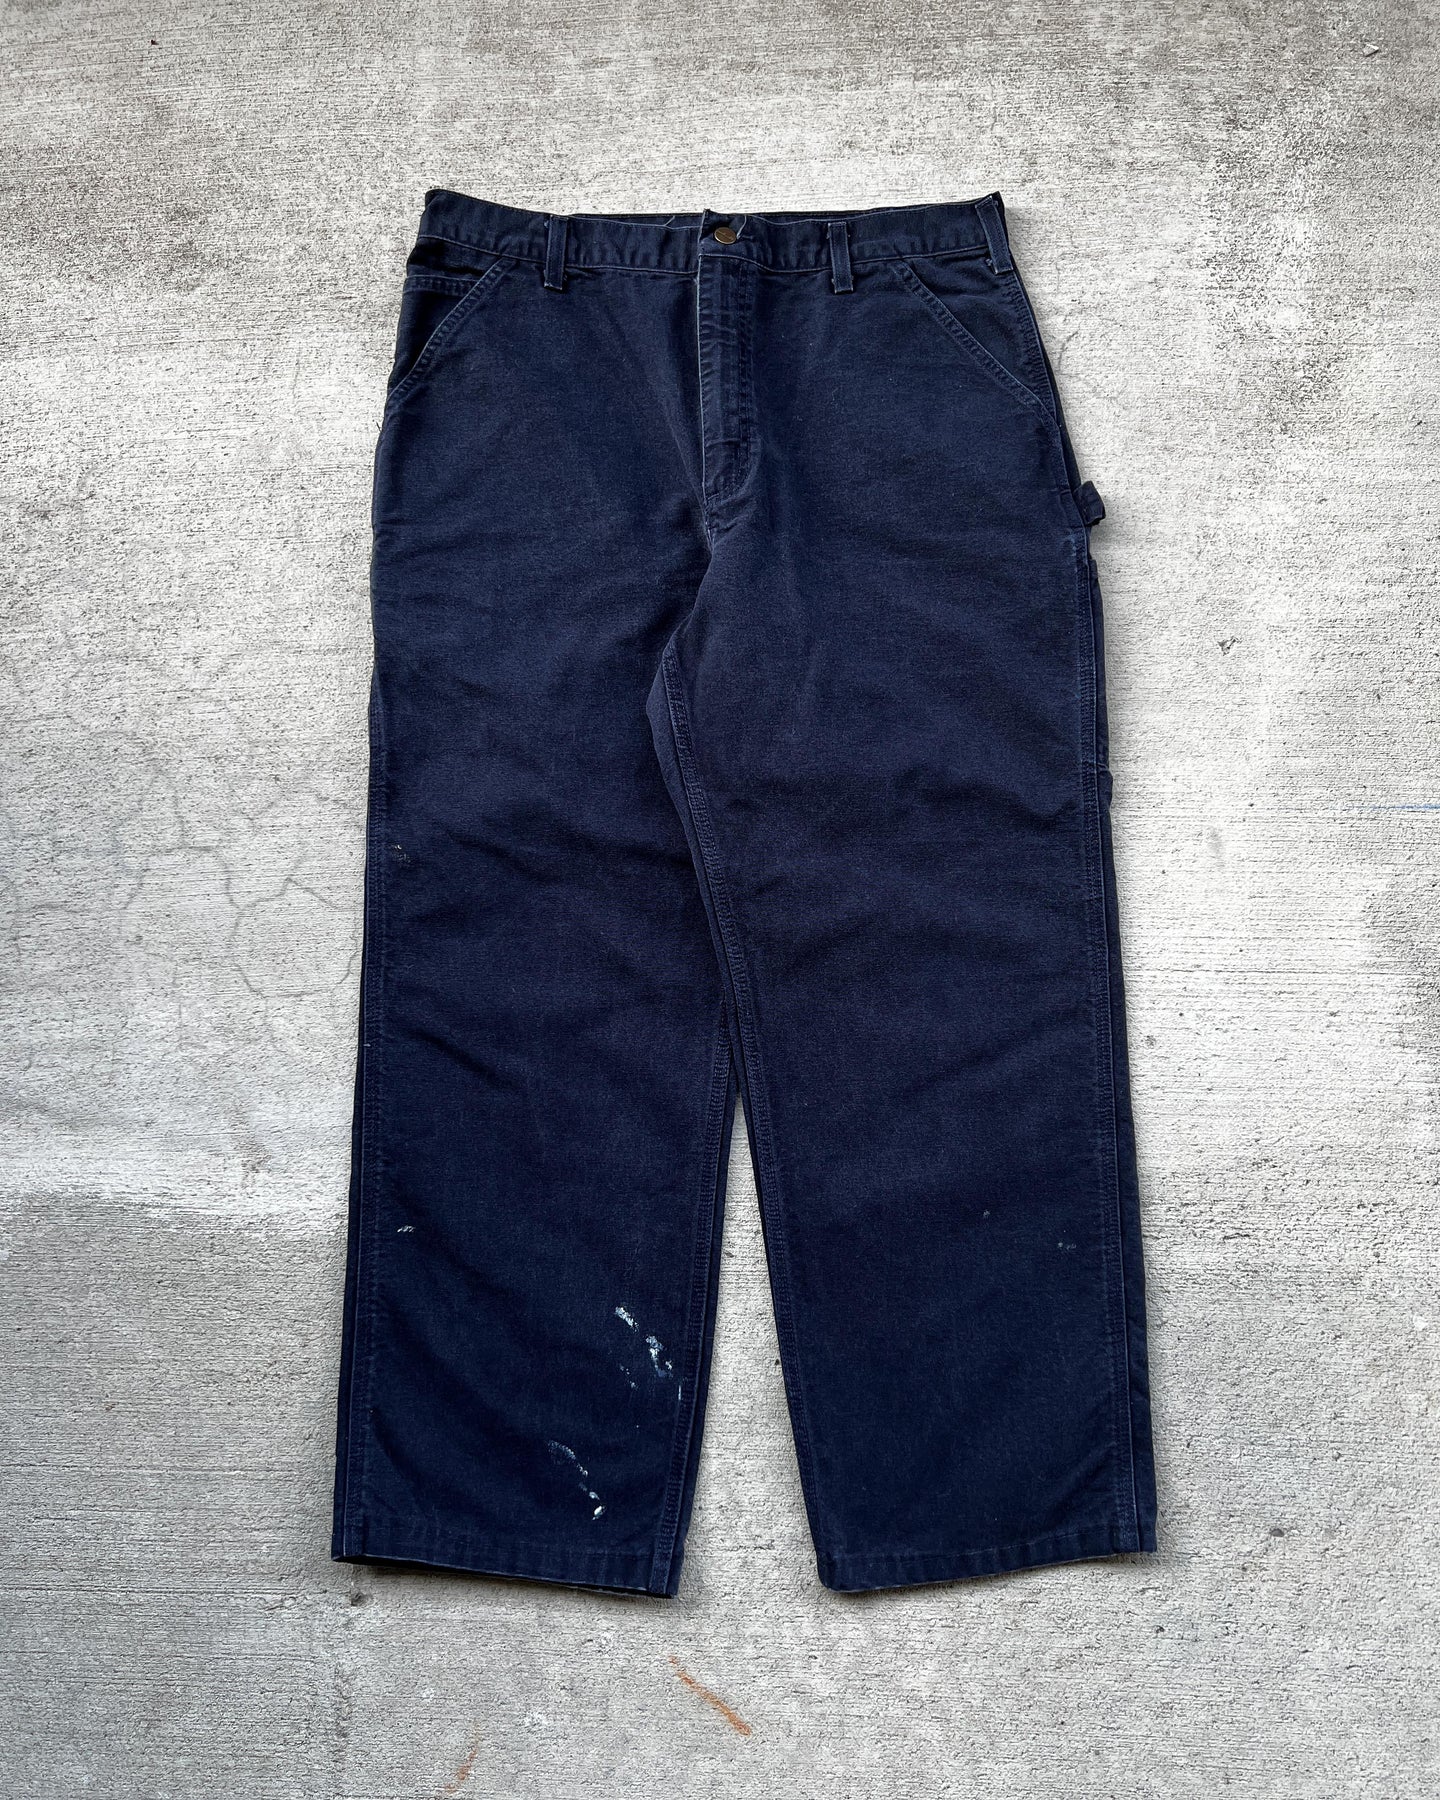 Navy Carhartt Carpenter Work Pants - Size 36 x 29